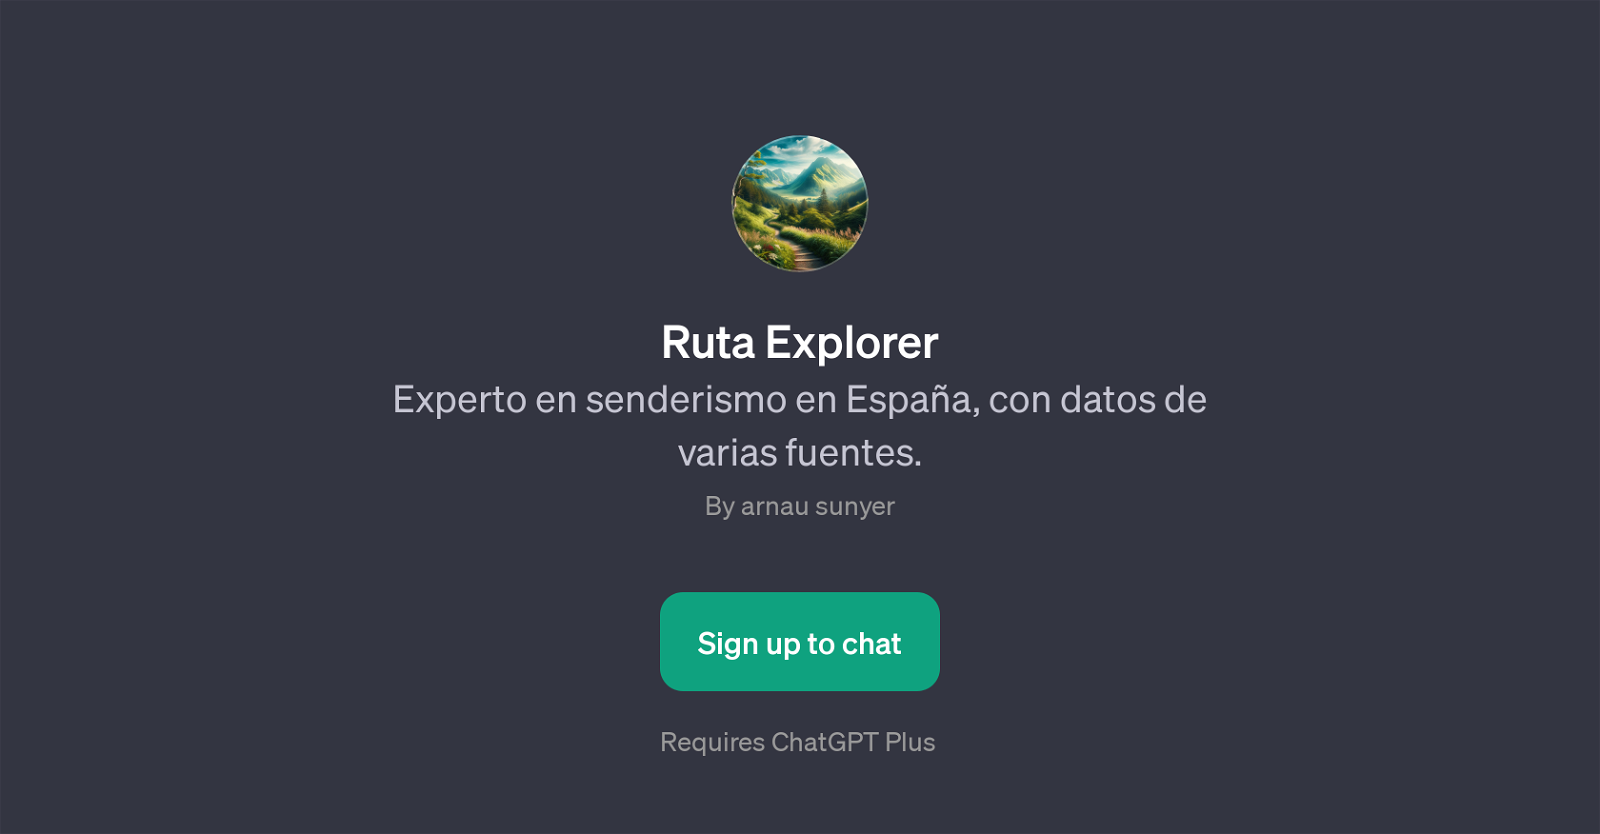 Ruta Explorer website